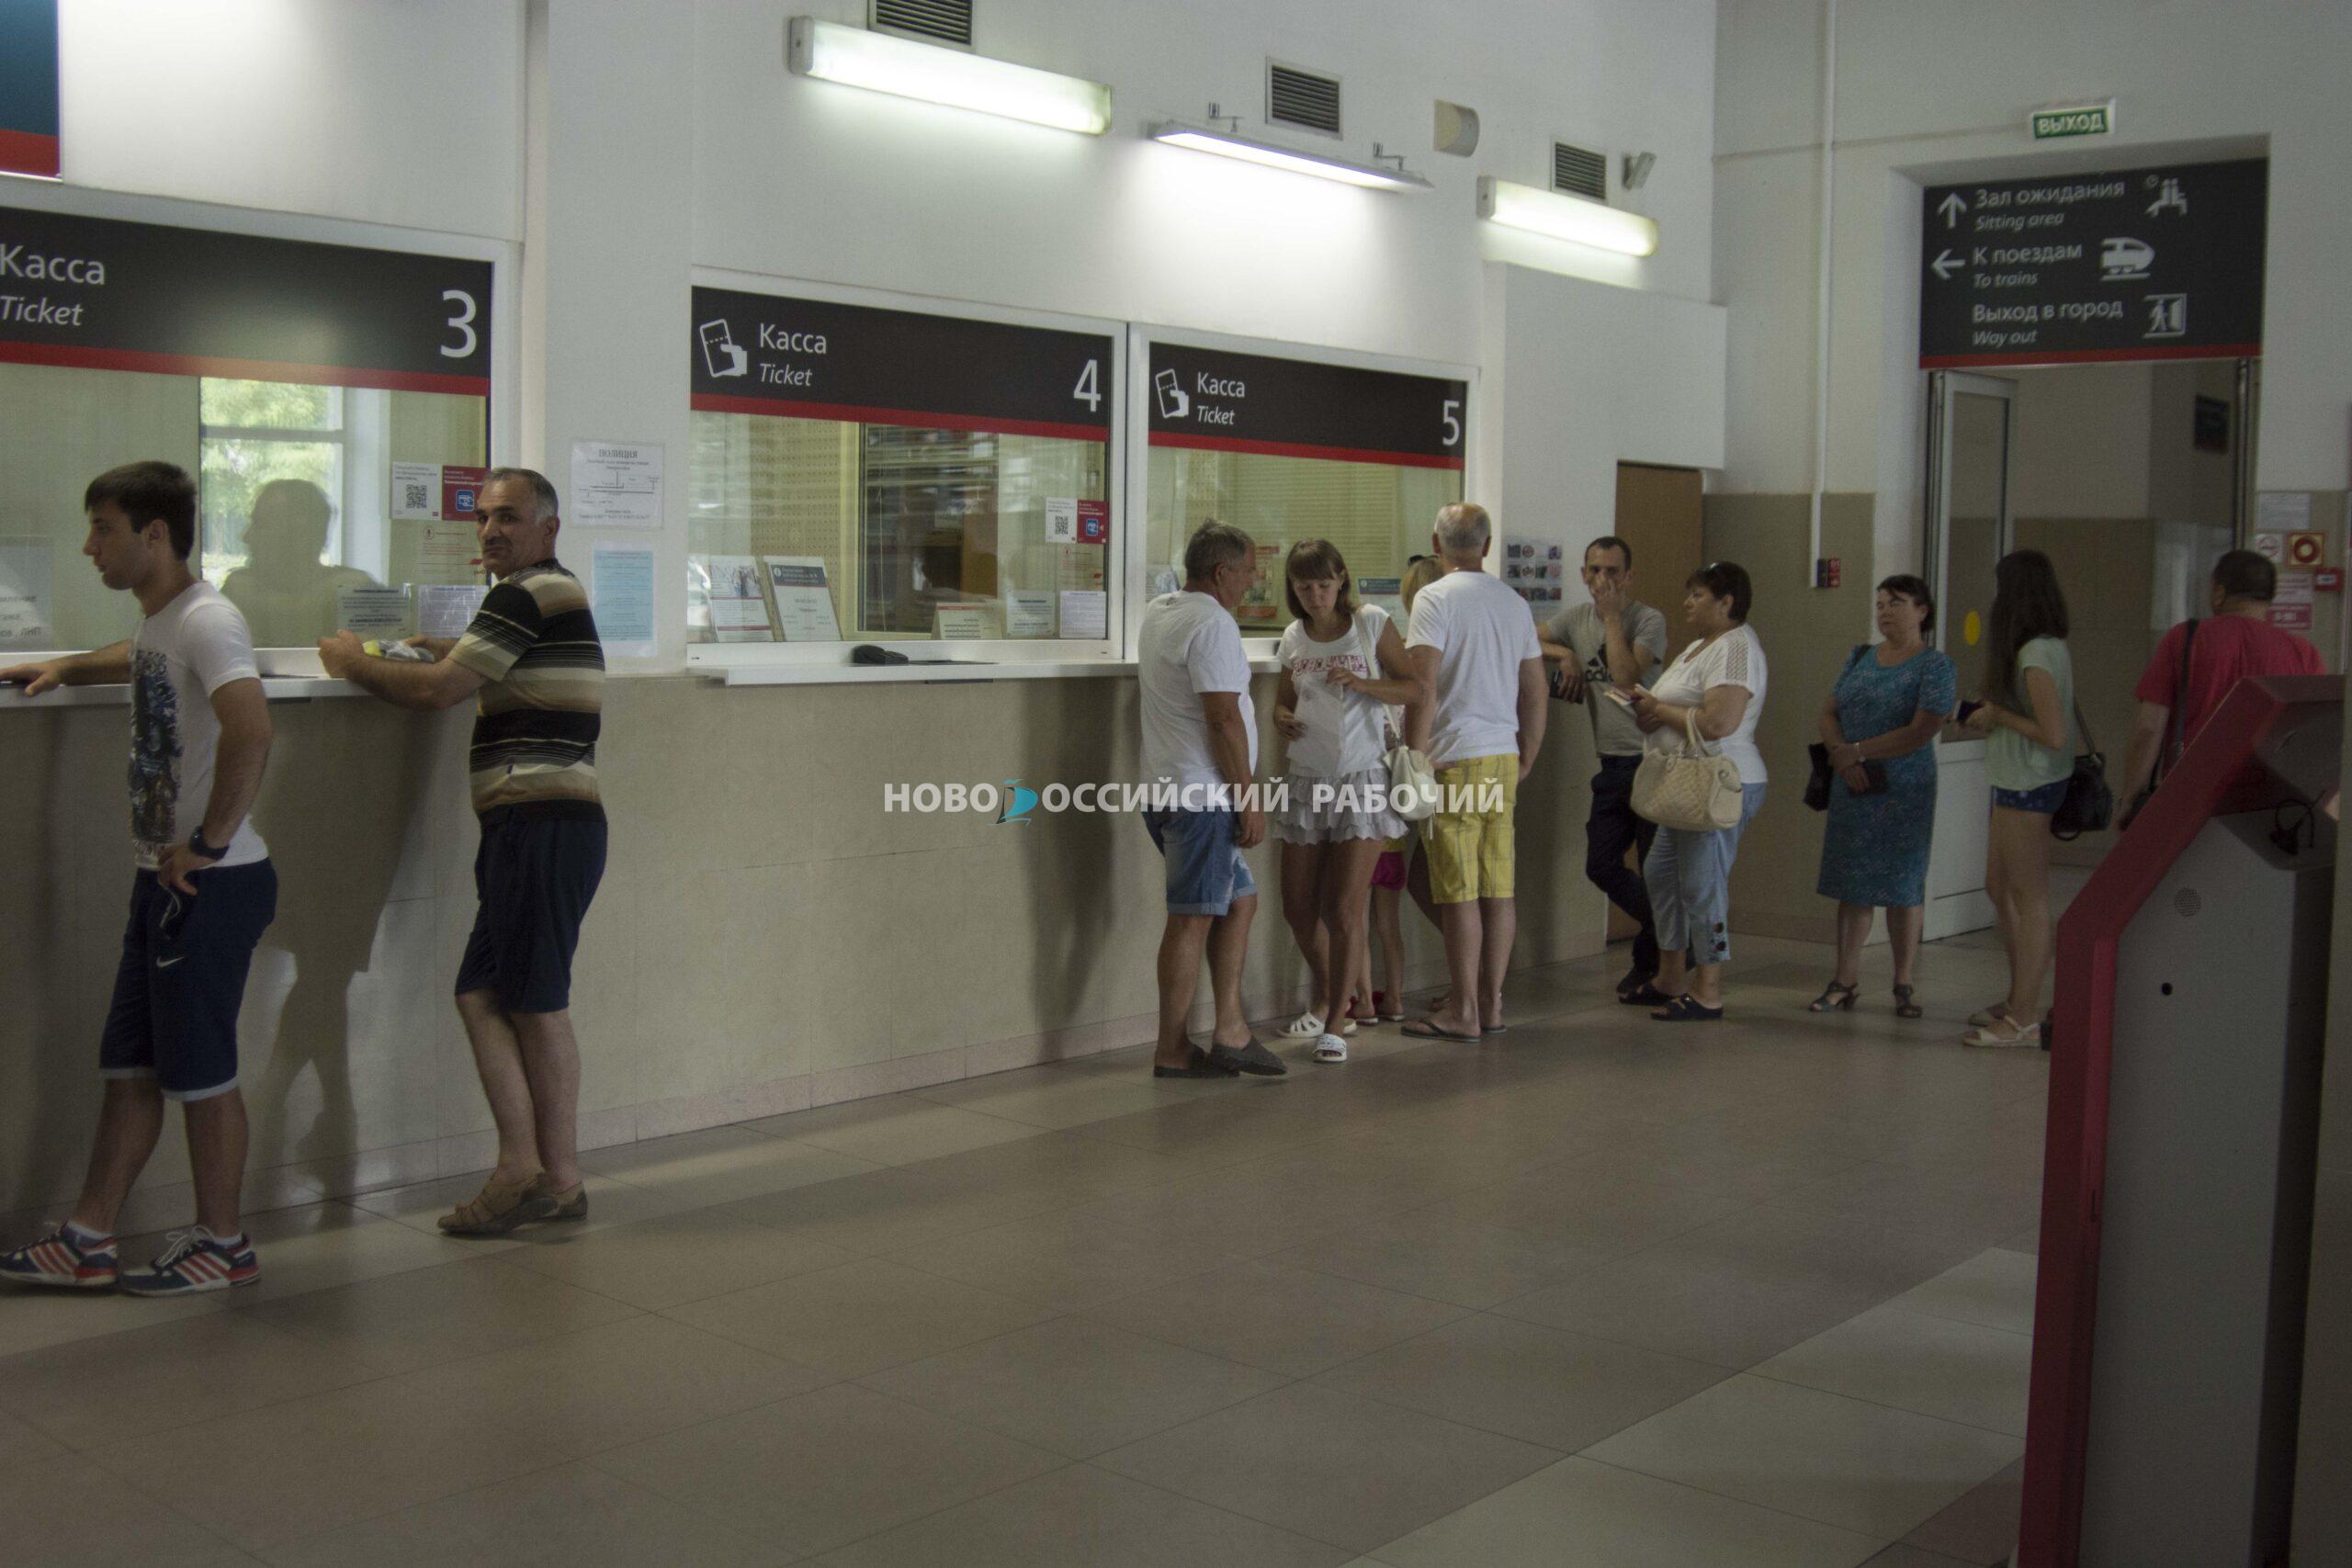 Билеты в Москву и обратно новороссийцы смогут купить только за 1,5 месяца до поездки